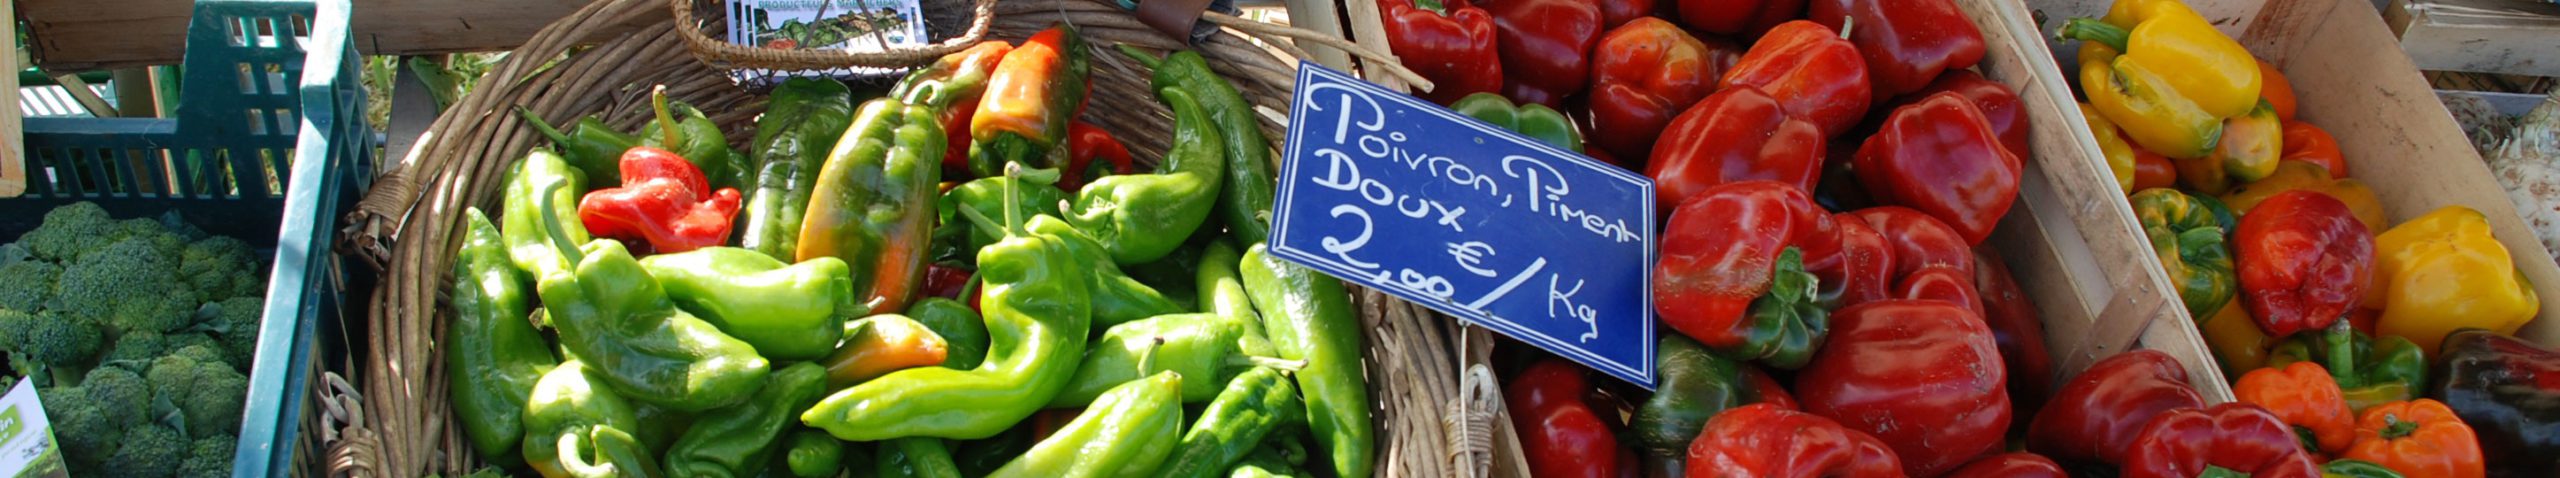 Développement économique dans le Marais poitevin - Étal de légumes